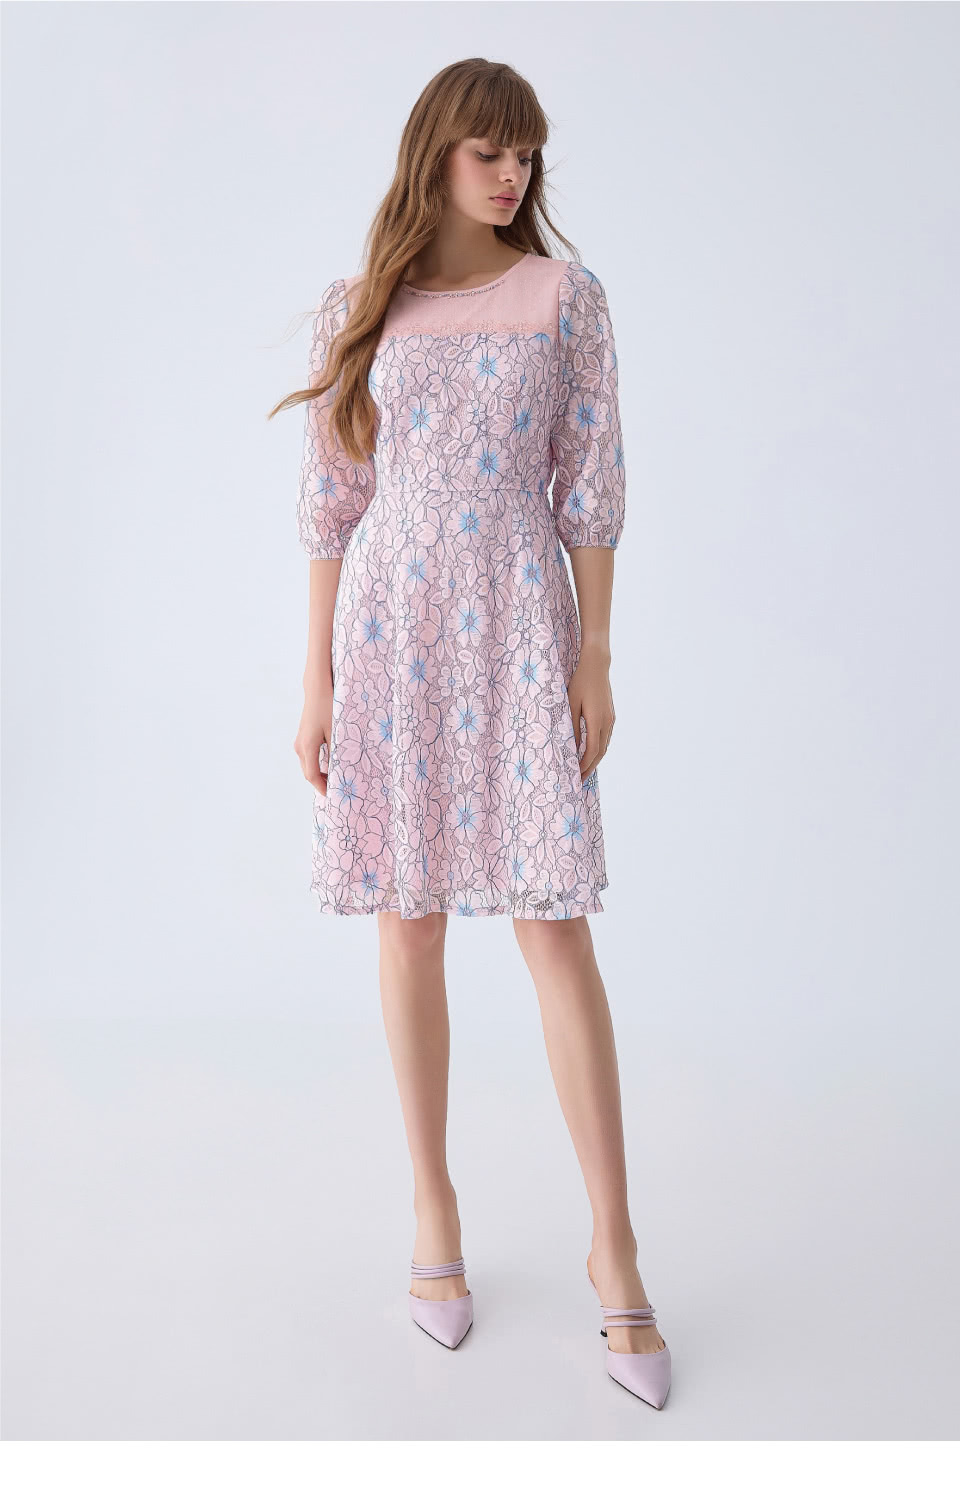 ILEY 伊蕾 花樣蕾絲七分袖洋裝(粉色；M-XL；1241